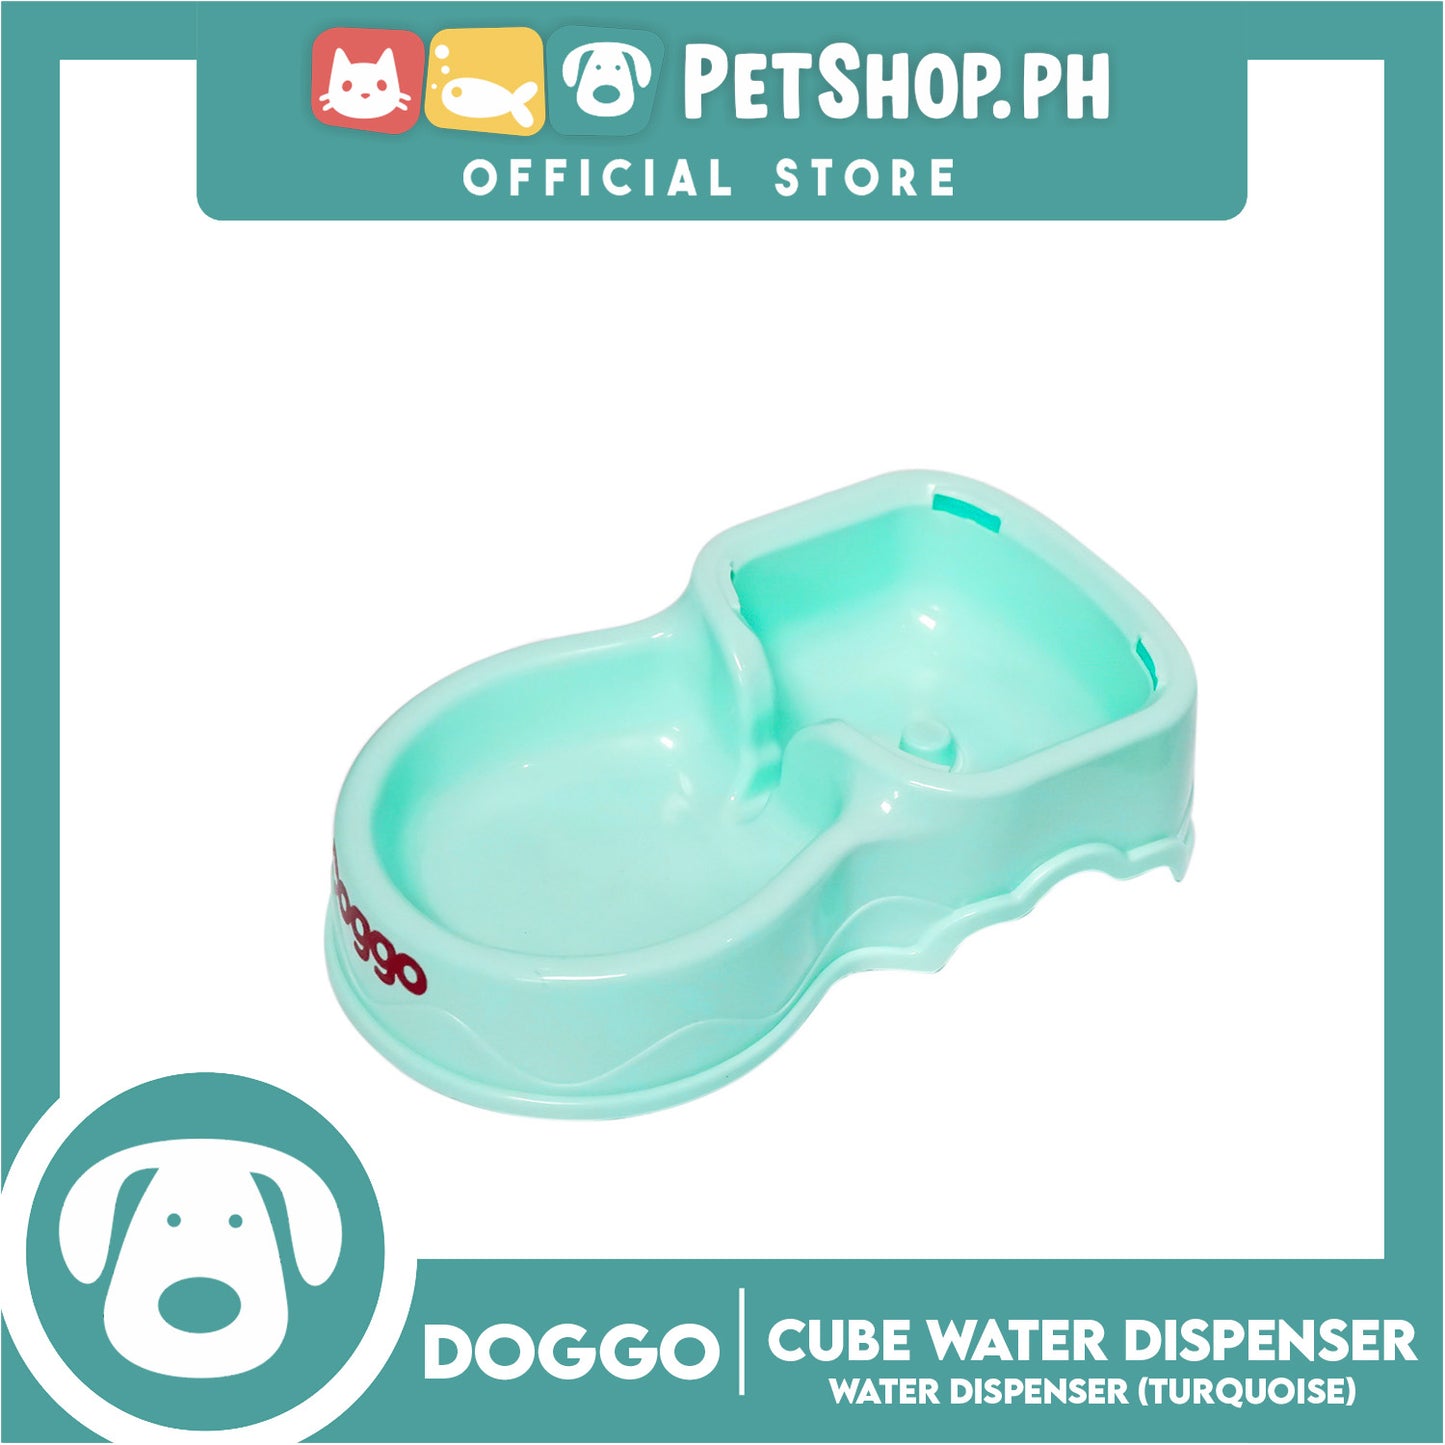 Doggo Dog Cube Water Dispenser (Turquoise Blue)